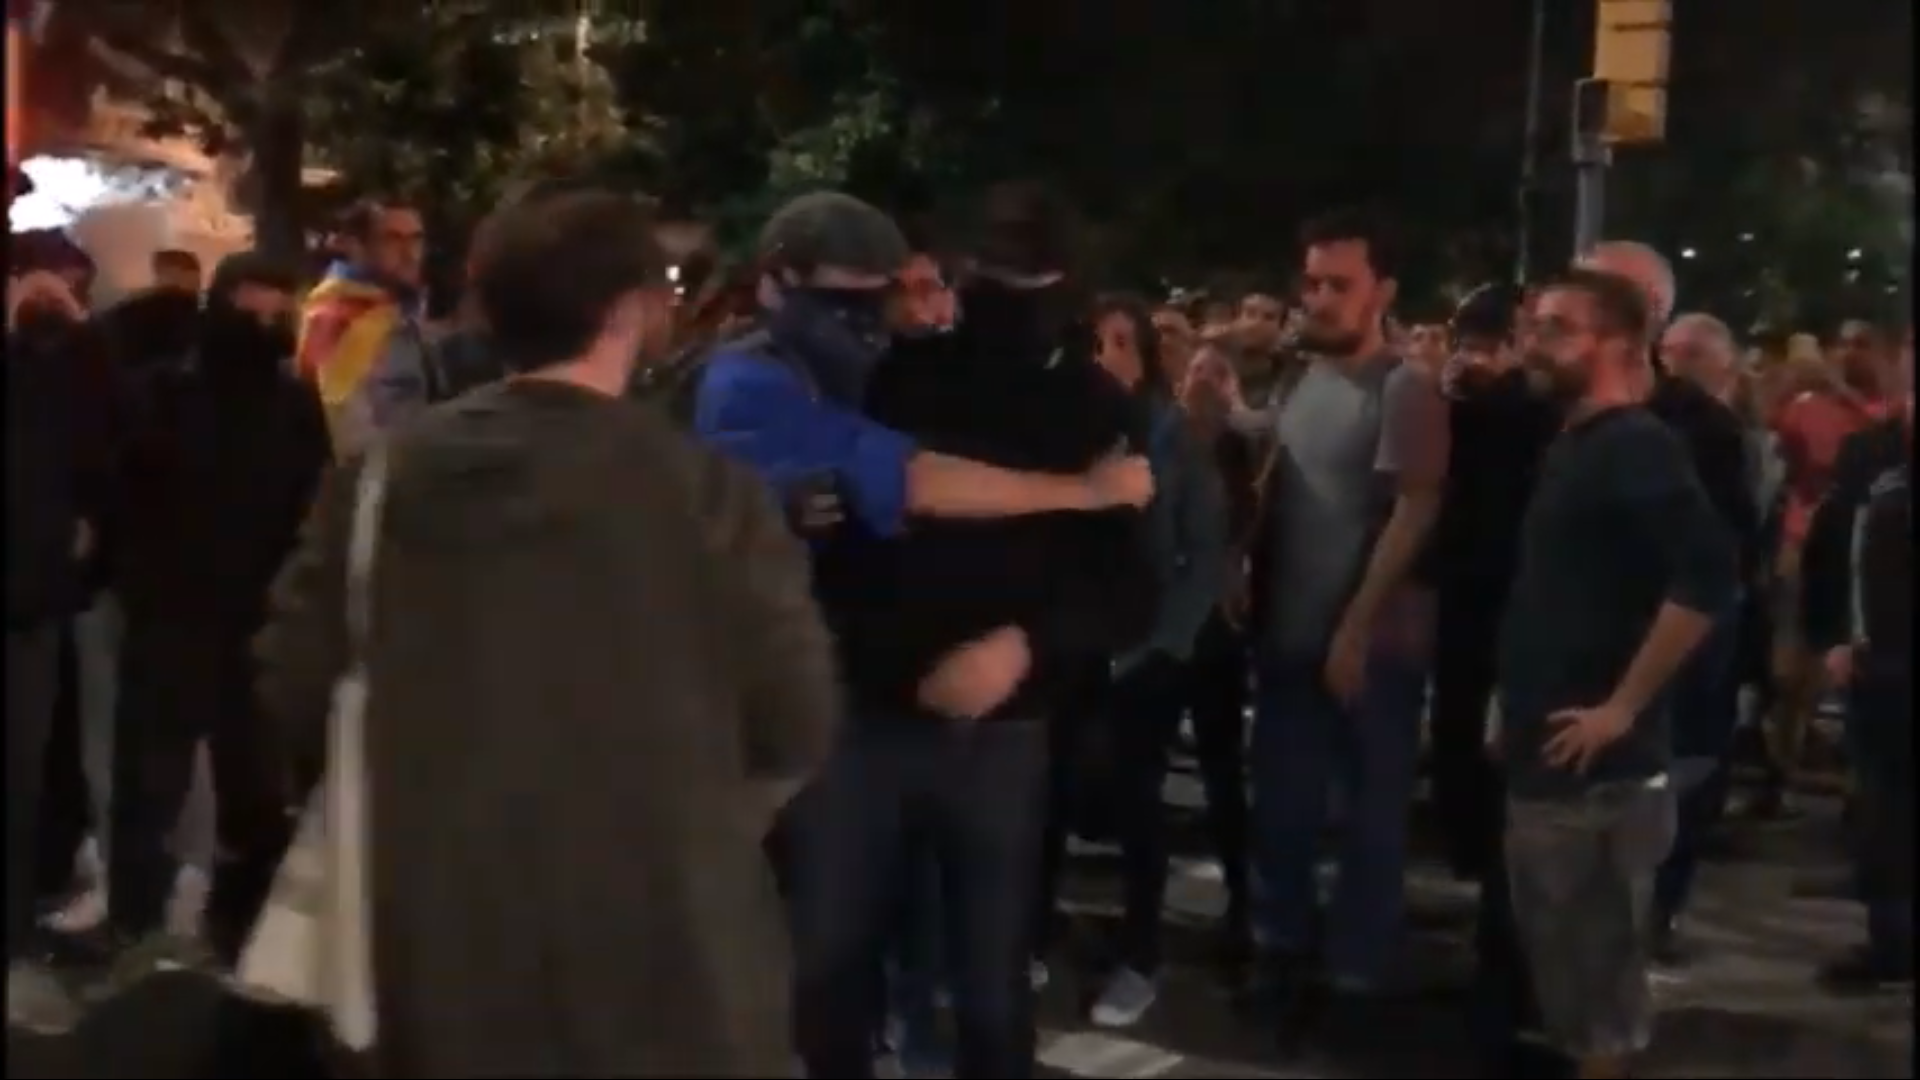 VÍDEO | Los manifestantes expulsan a un presunto infiltrado: "¡Enseña la cara!"